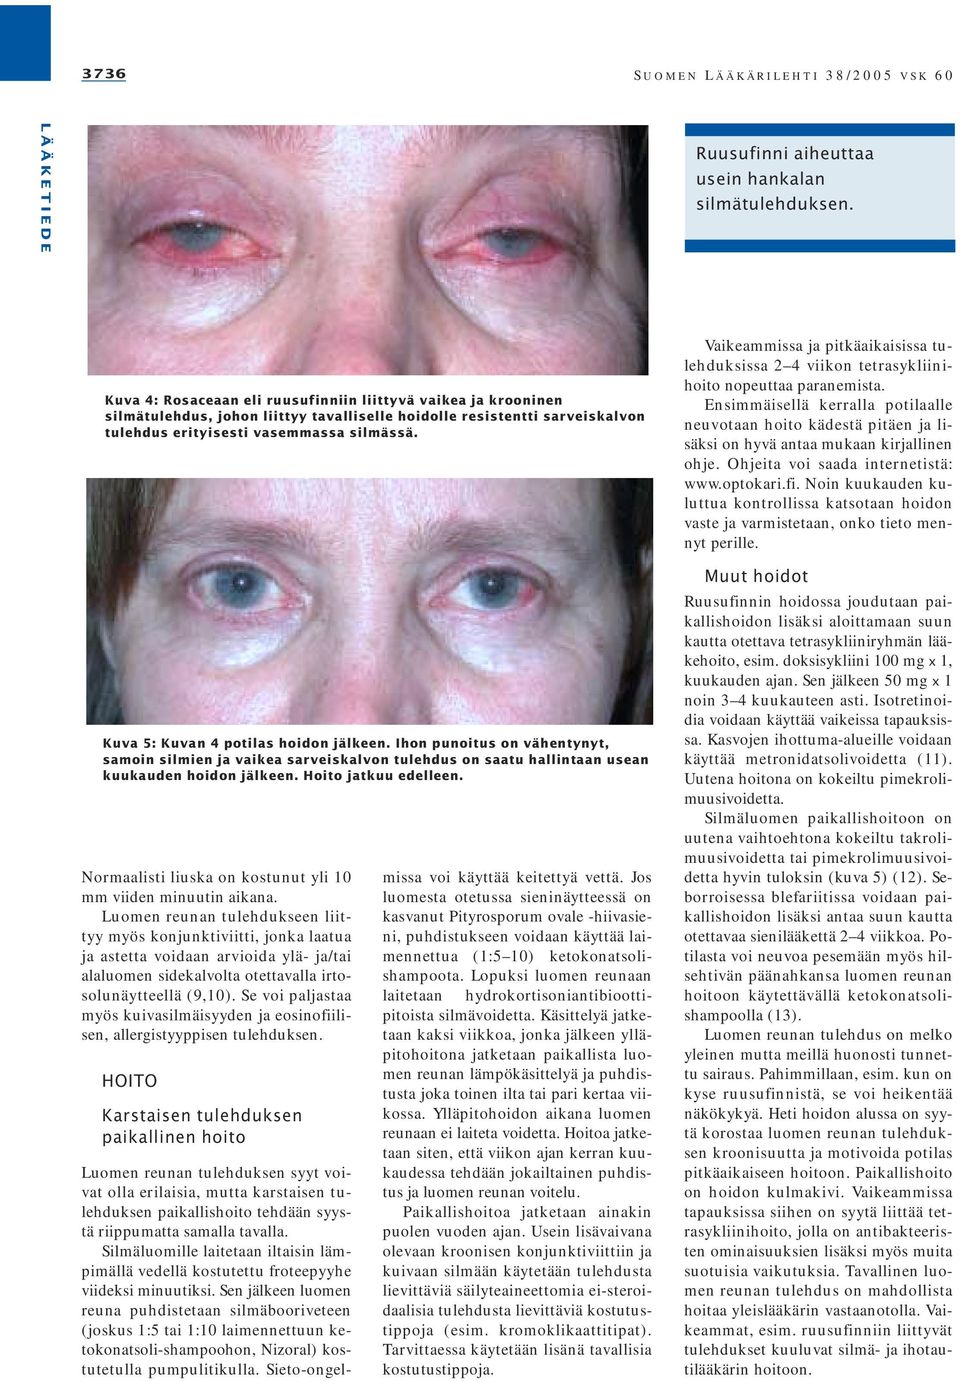 Kuva 5: Kuvan 4 potilas hoidon jälkeen. Ihon punoitus on vähentynyt, samoin silmien ja vaikea sarveiskalvon tulehdus on saatu hallintaan usean kuukauden hoidon jälkeen. Hoito jatkuu edelleen.